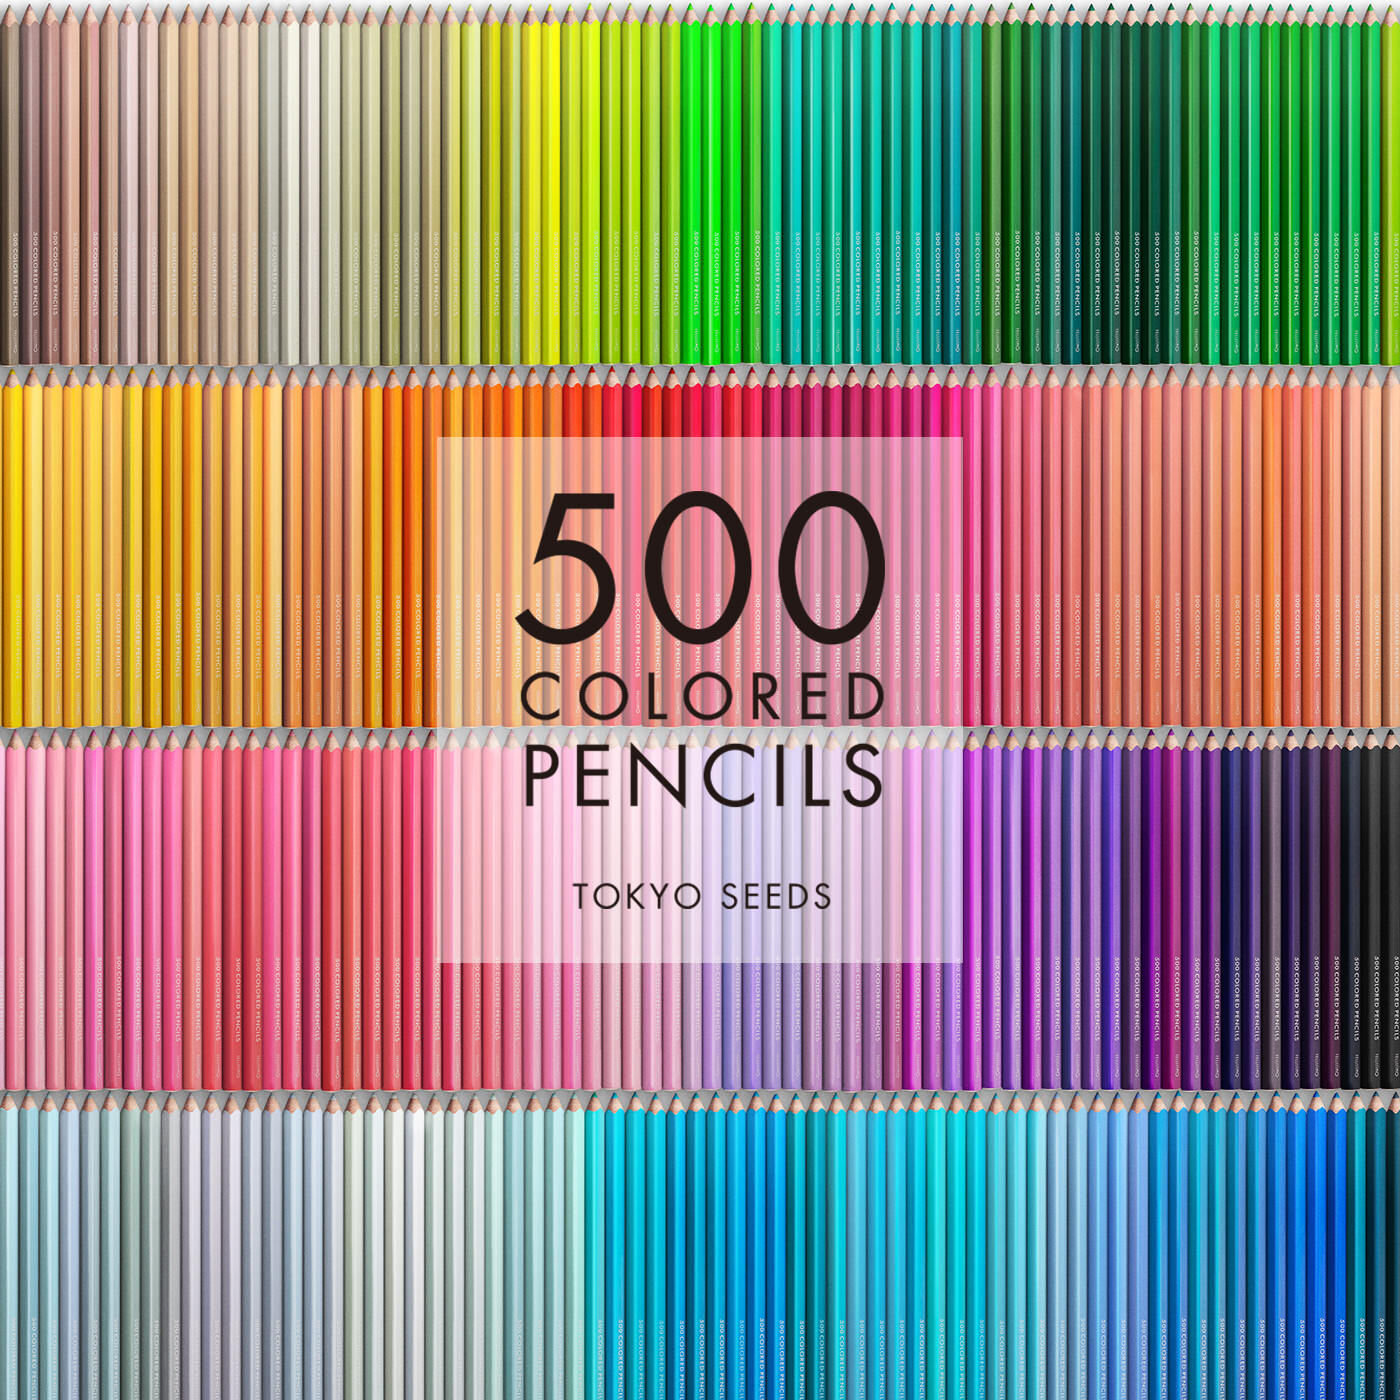 Real Stock|【299/500 SUMMER QUILT】500色の色えんぴつ TOKYO SEEDS|1992年、世界初の「500色」という膨大な色数の色えんぴつが誕生して以来、その販売数は発売当初から合わせると、世界55ヵ国10万セット以上。今回、メイド・イン・ジャパンにこだわり、すべてが新しく生まれ変わって登場しました。